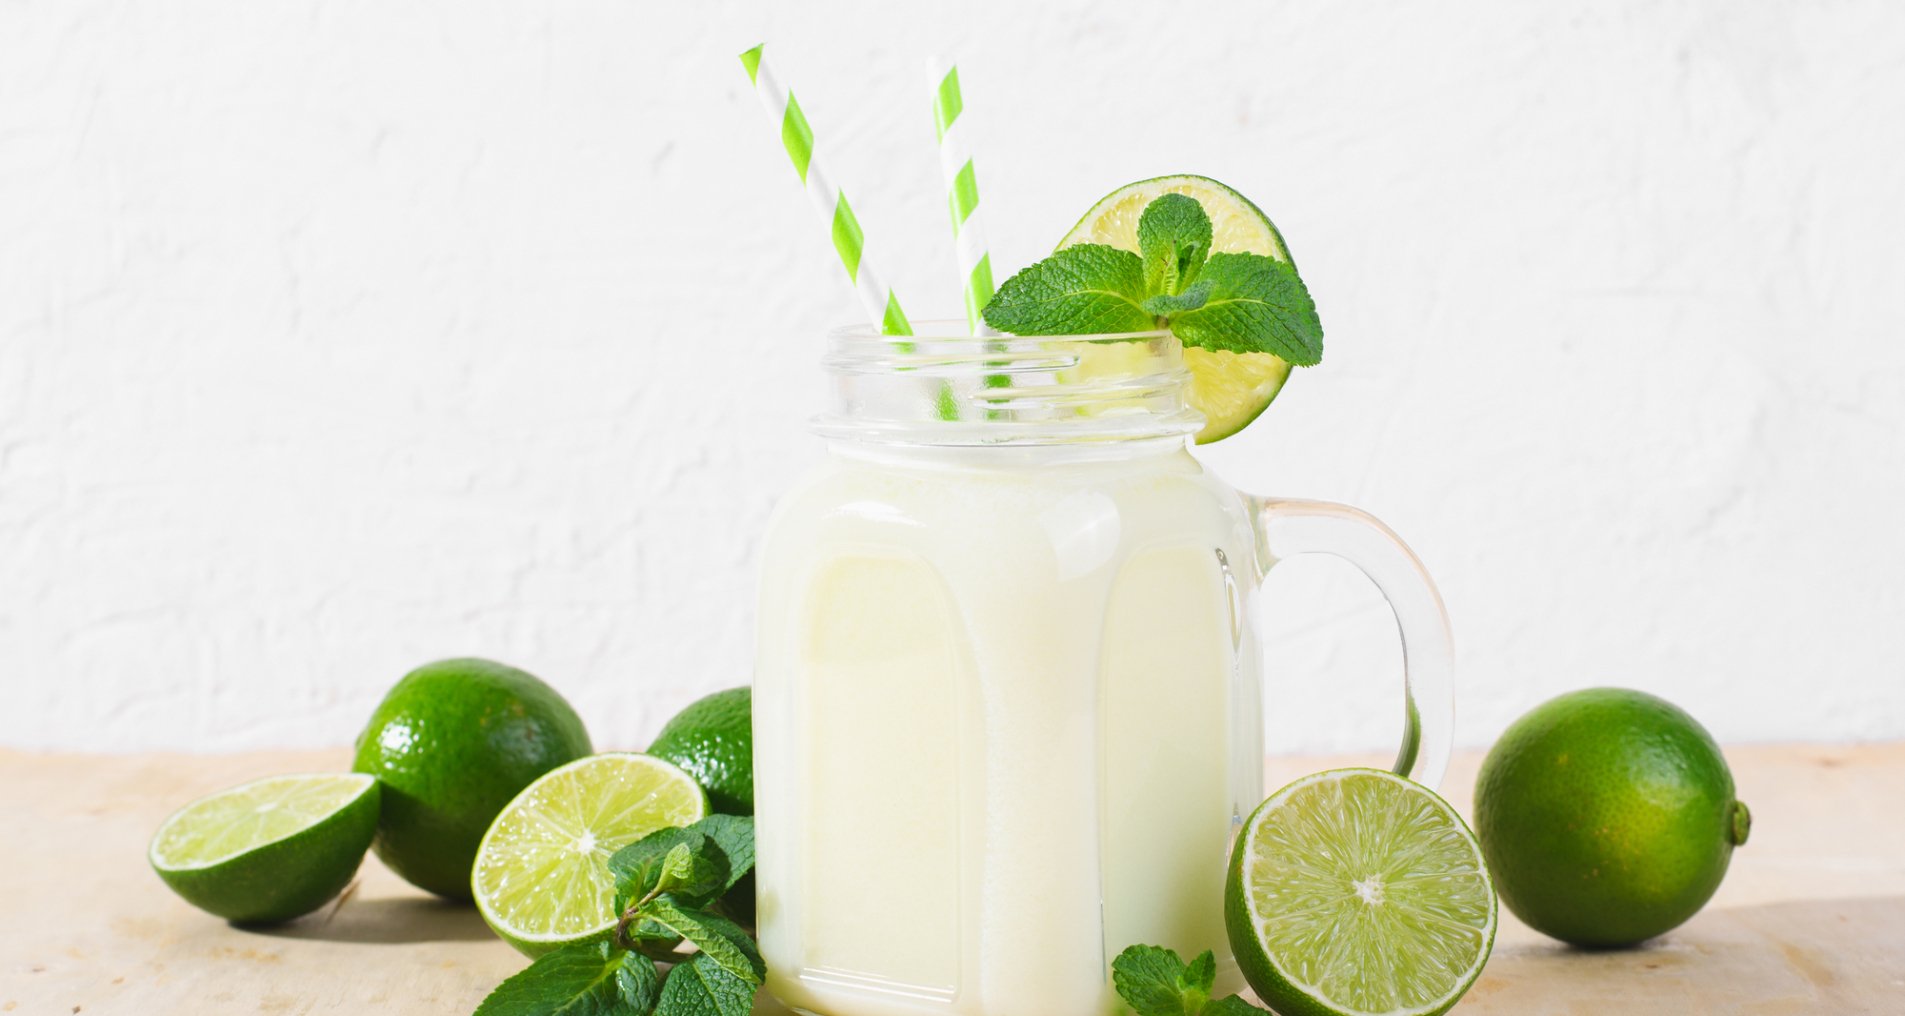 Что пить в жару: лучшие рецепты холодных домашних лимонадов